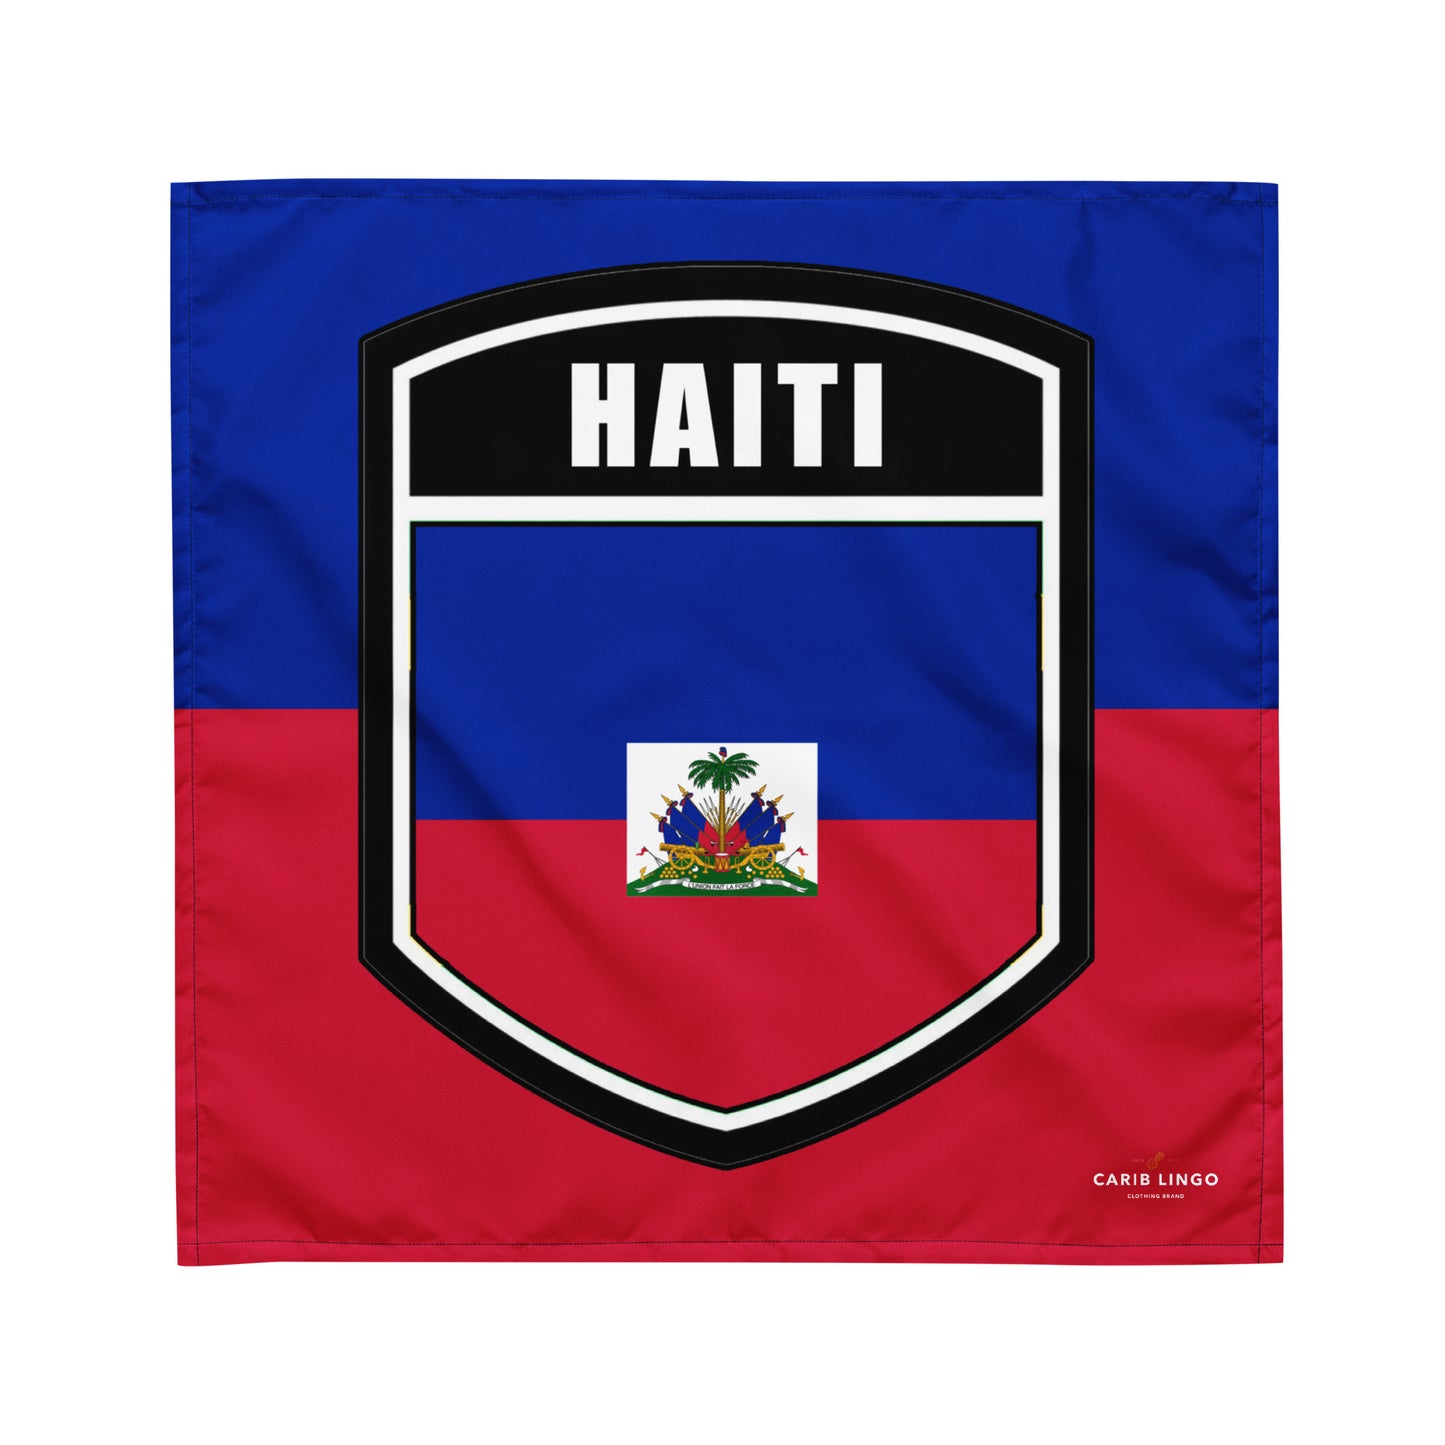 Haiti bandana